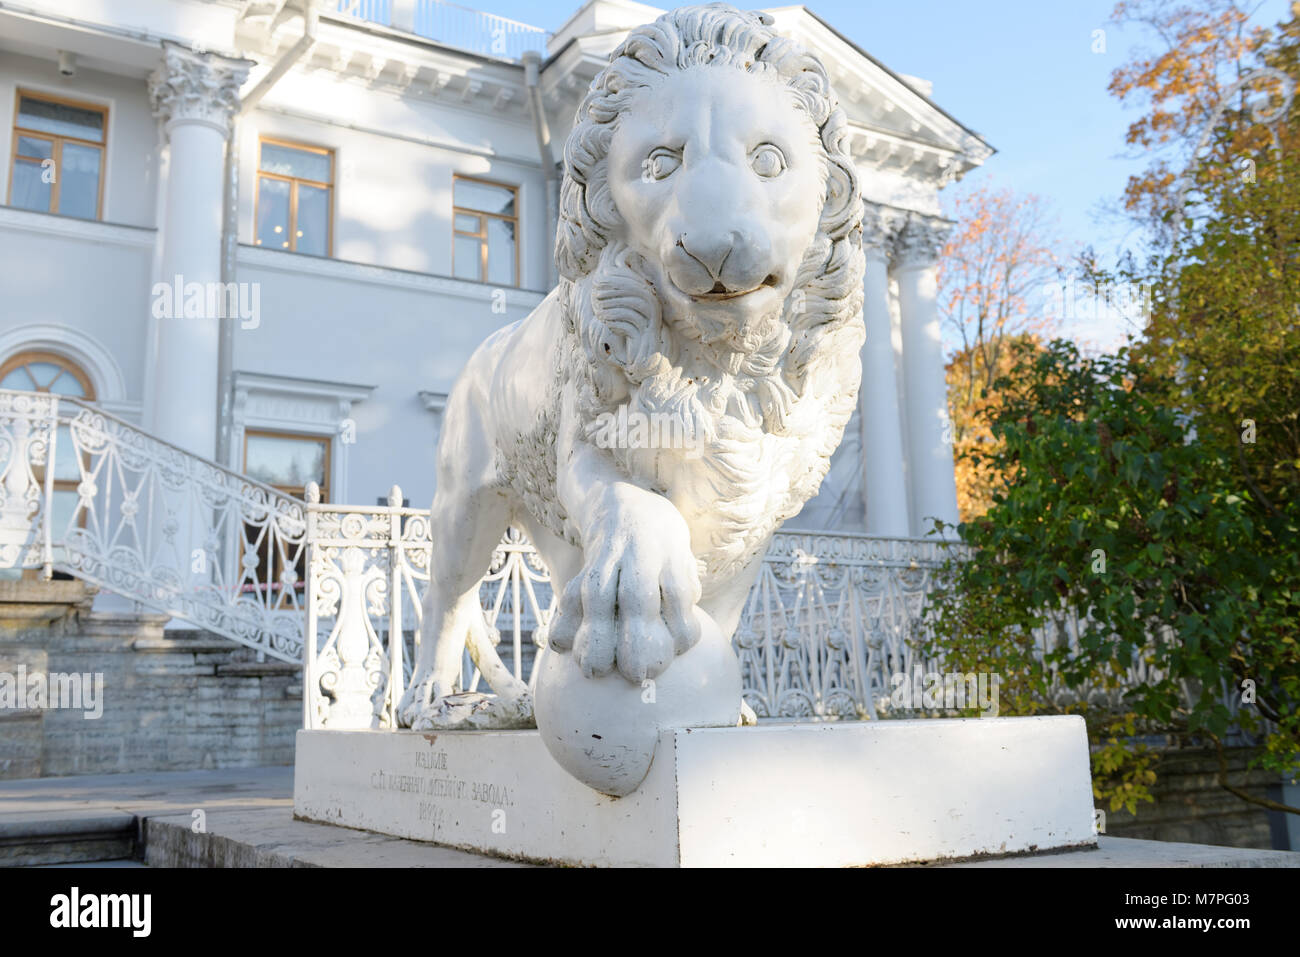 Saint-pétersbourg, Russie - le 16 octobre 2015 : Sculpture de lion en face du Palais Yelagin. Créé en 1822, c'était la première des statues de lion en fonte à l'al. Banque D'Images